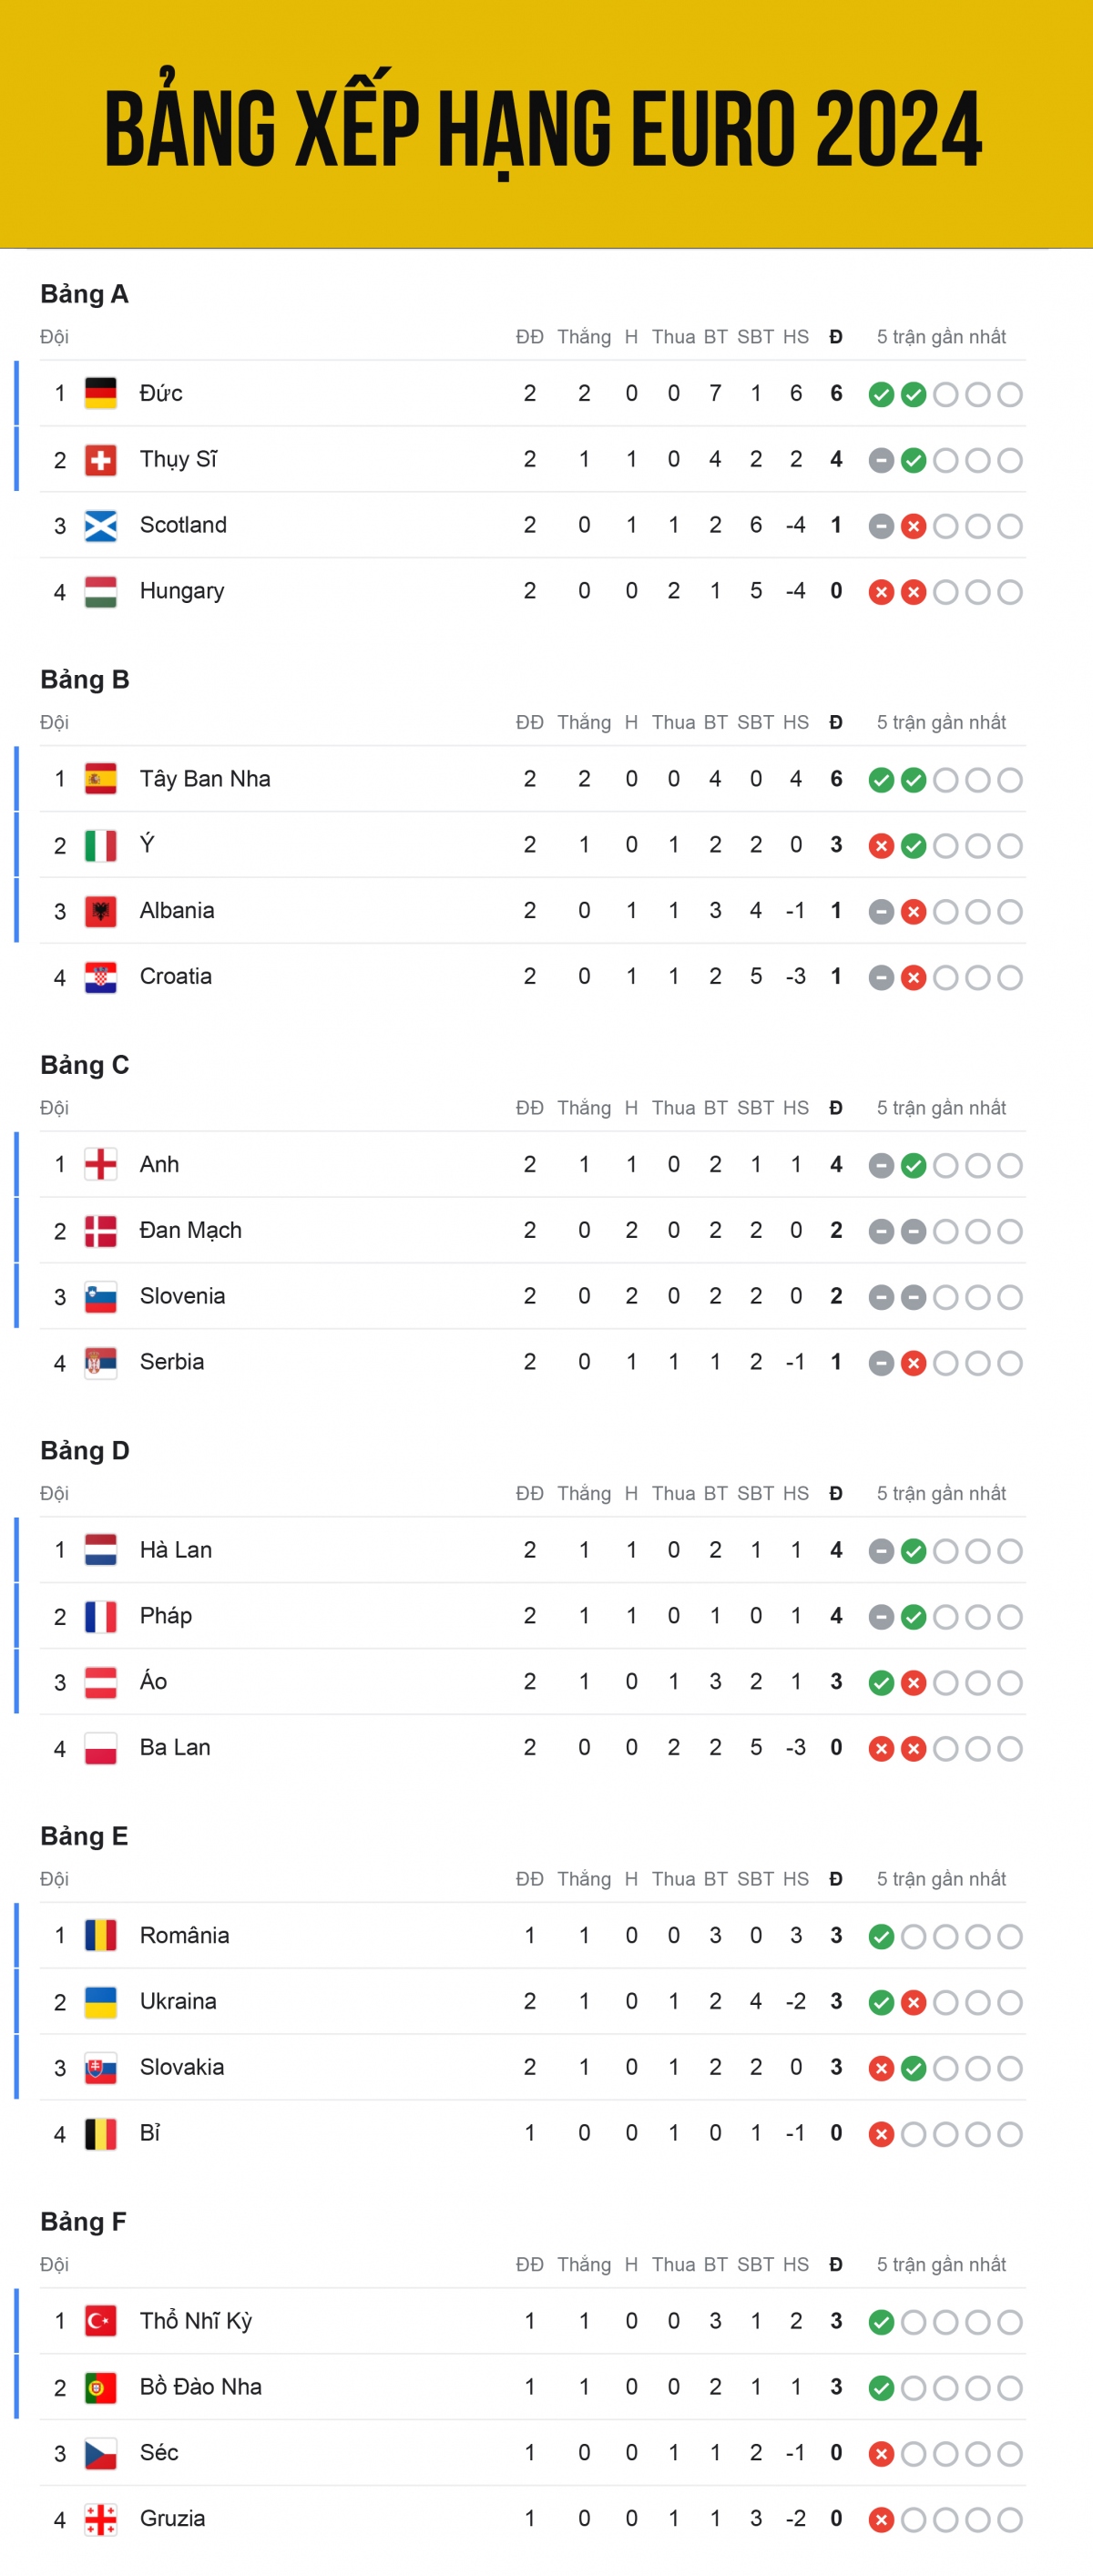 Bảng xếp hạng EURO 2024 mới nhất: Xác định đội đầu tiên bị loại